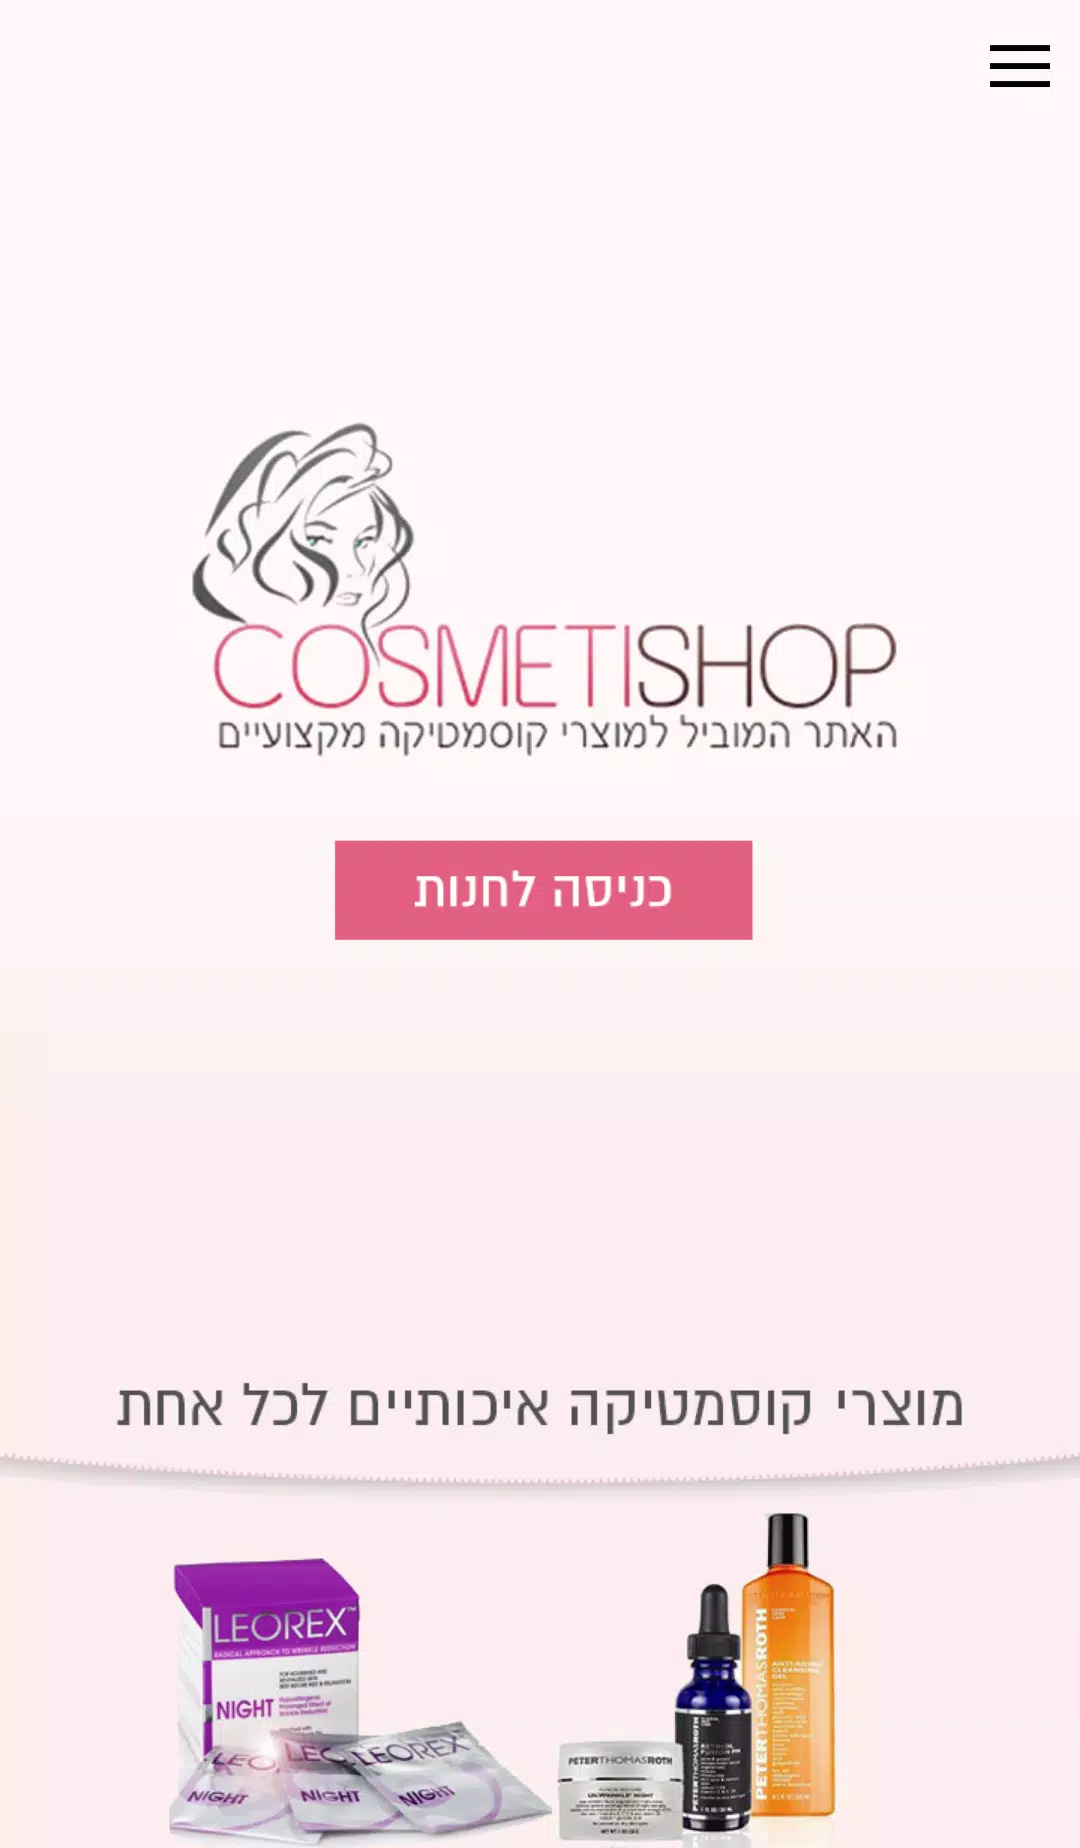 קוסמטישופ - Cosmetishop APK for Android Download